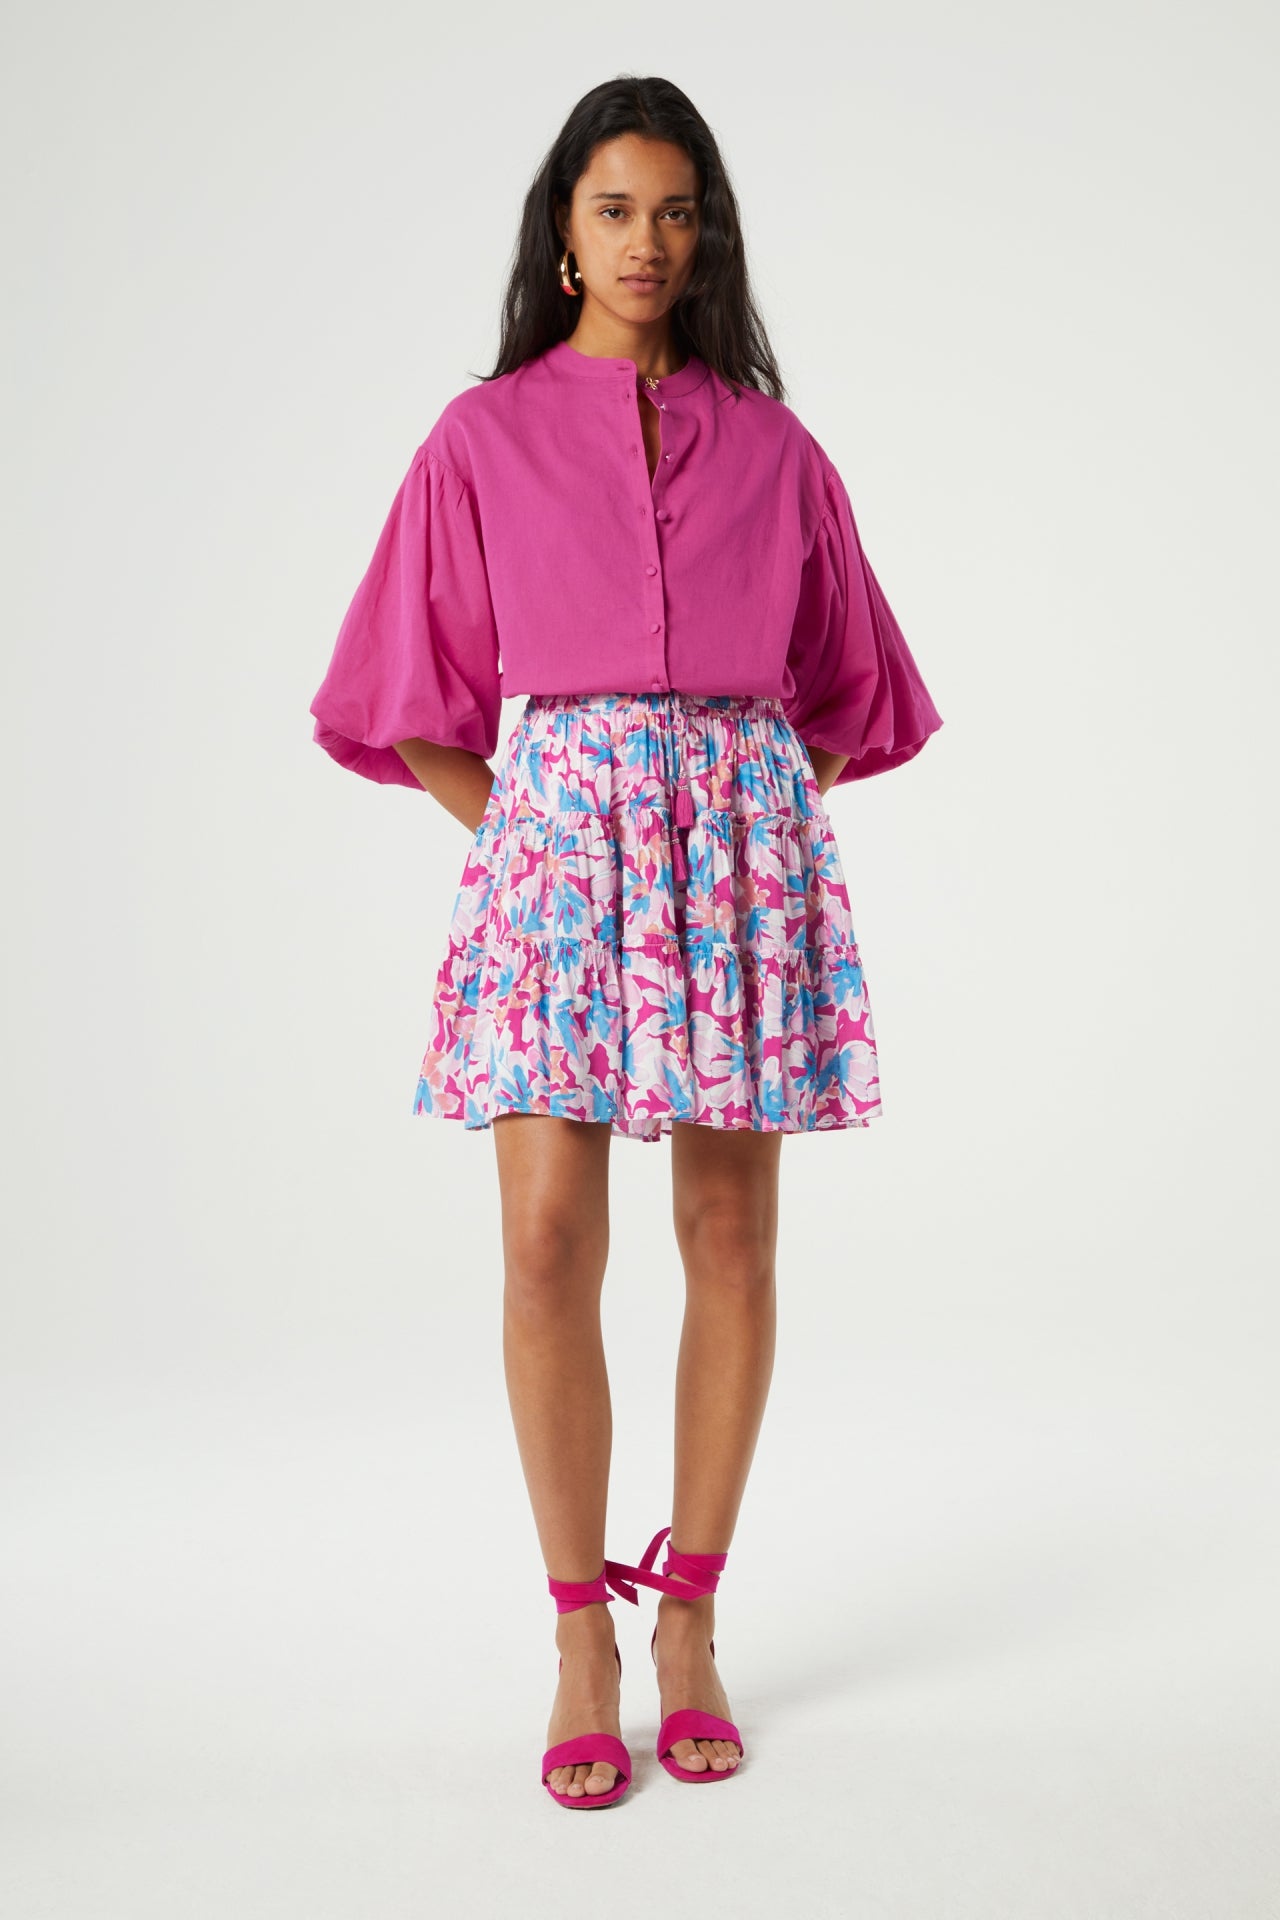 Mitzi Skirt | Azure Blue/Hot Pink